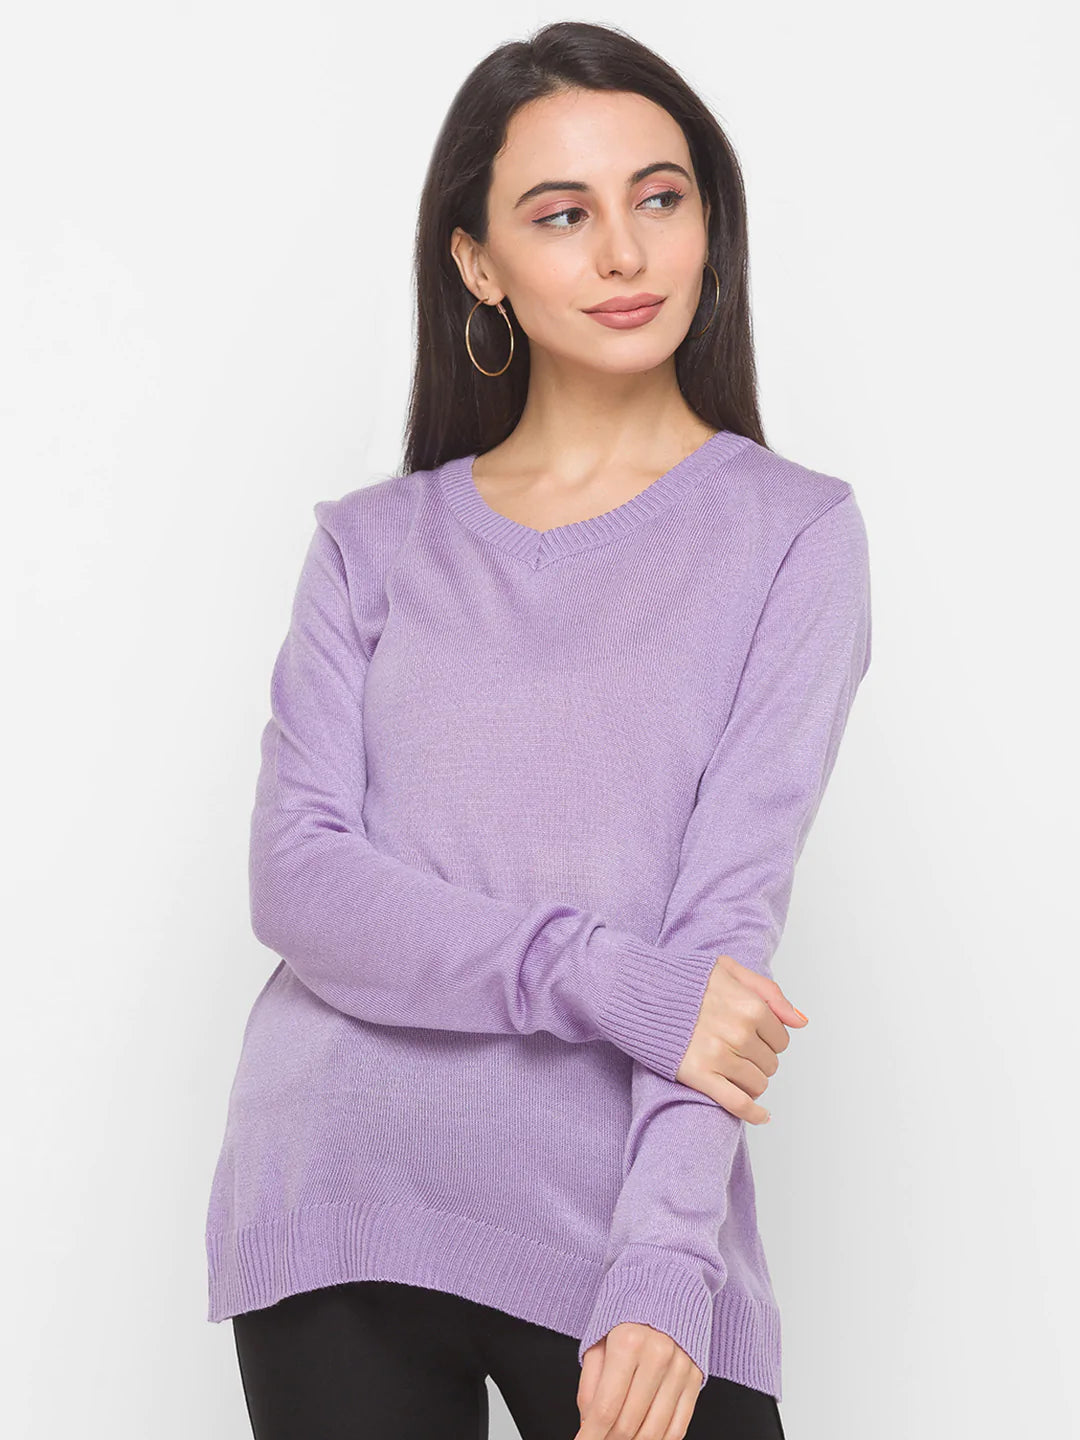 Globus Long Sleeves Solid Sweaters